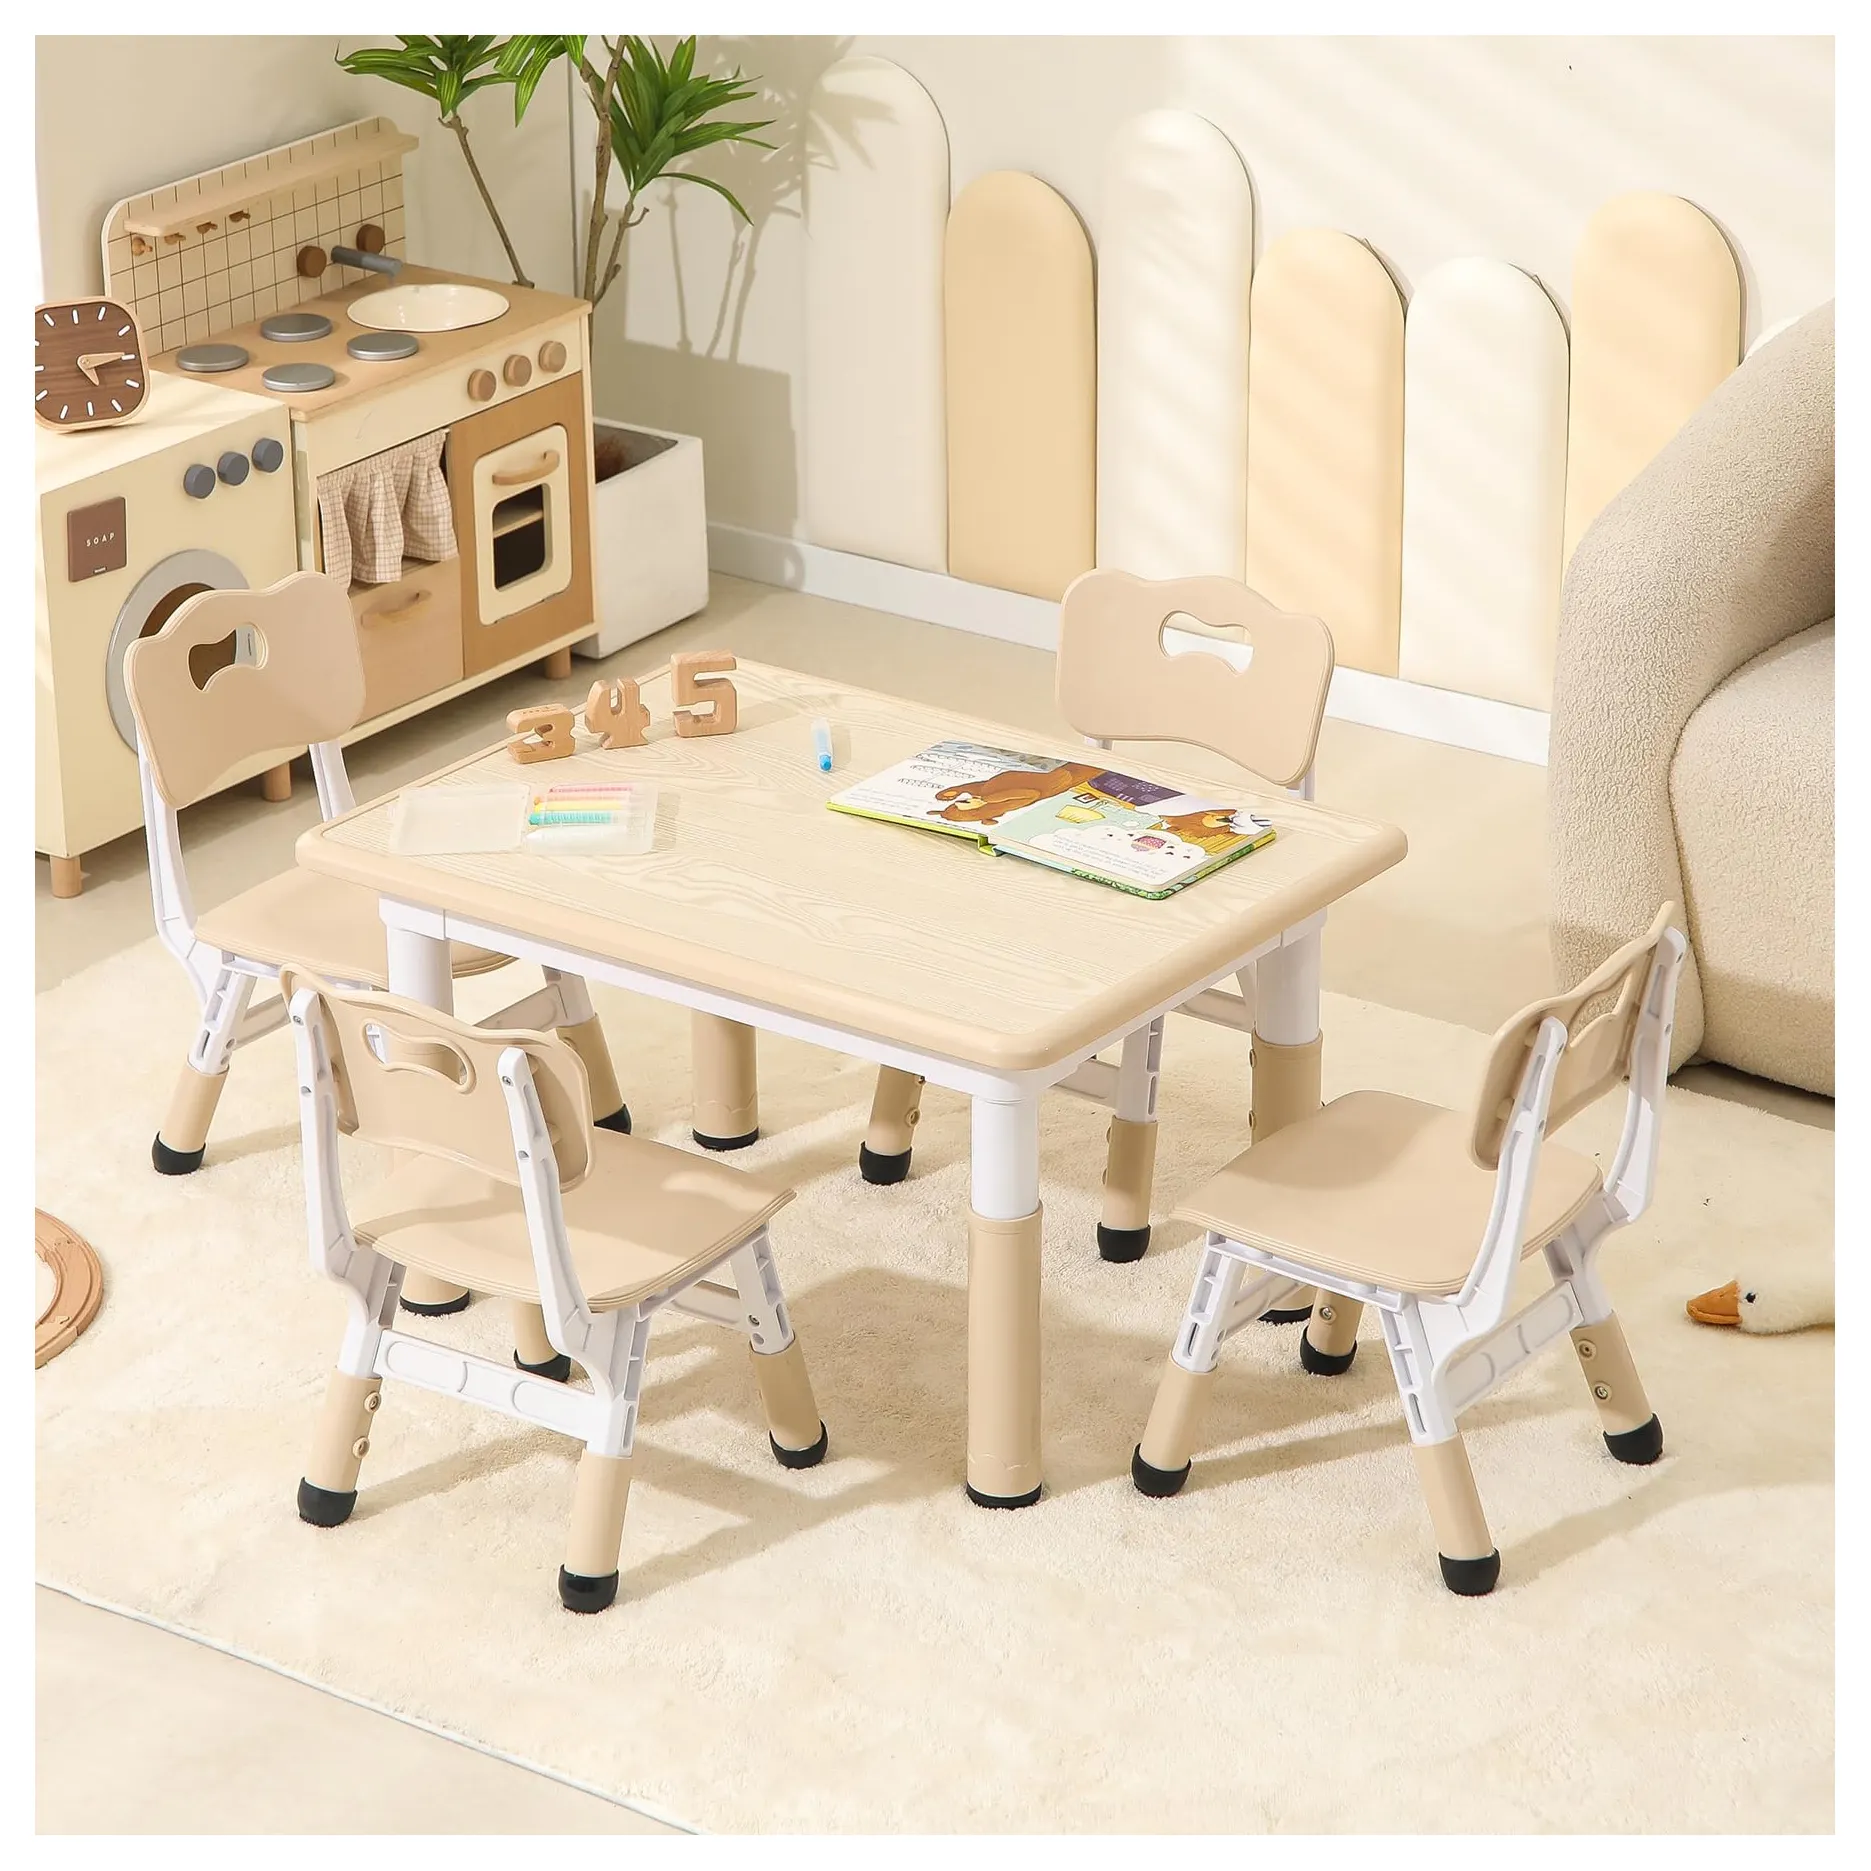 キッズテーブルと椅子、幼児用テーブルと椅子、キッズグラフィティテーブル、キッズテーブルと椅子セット、学習テーブルと椅子幼児用デスク